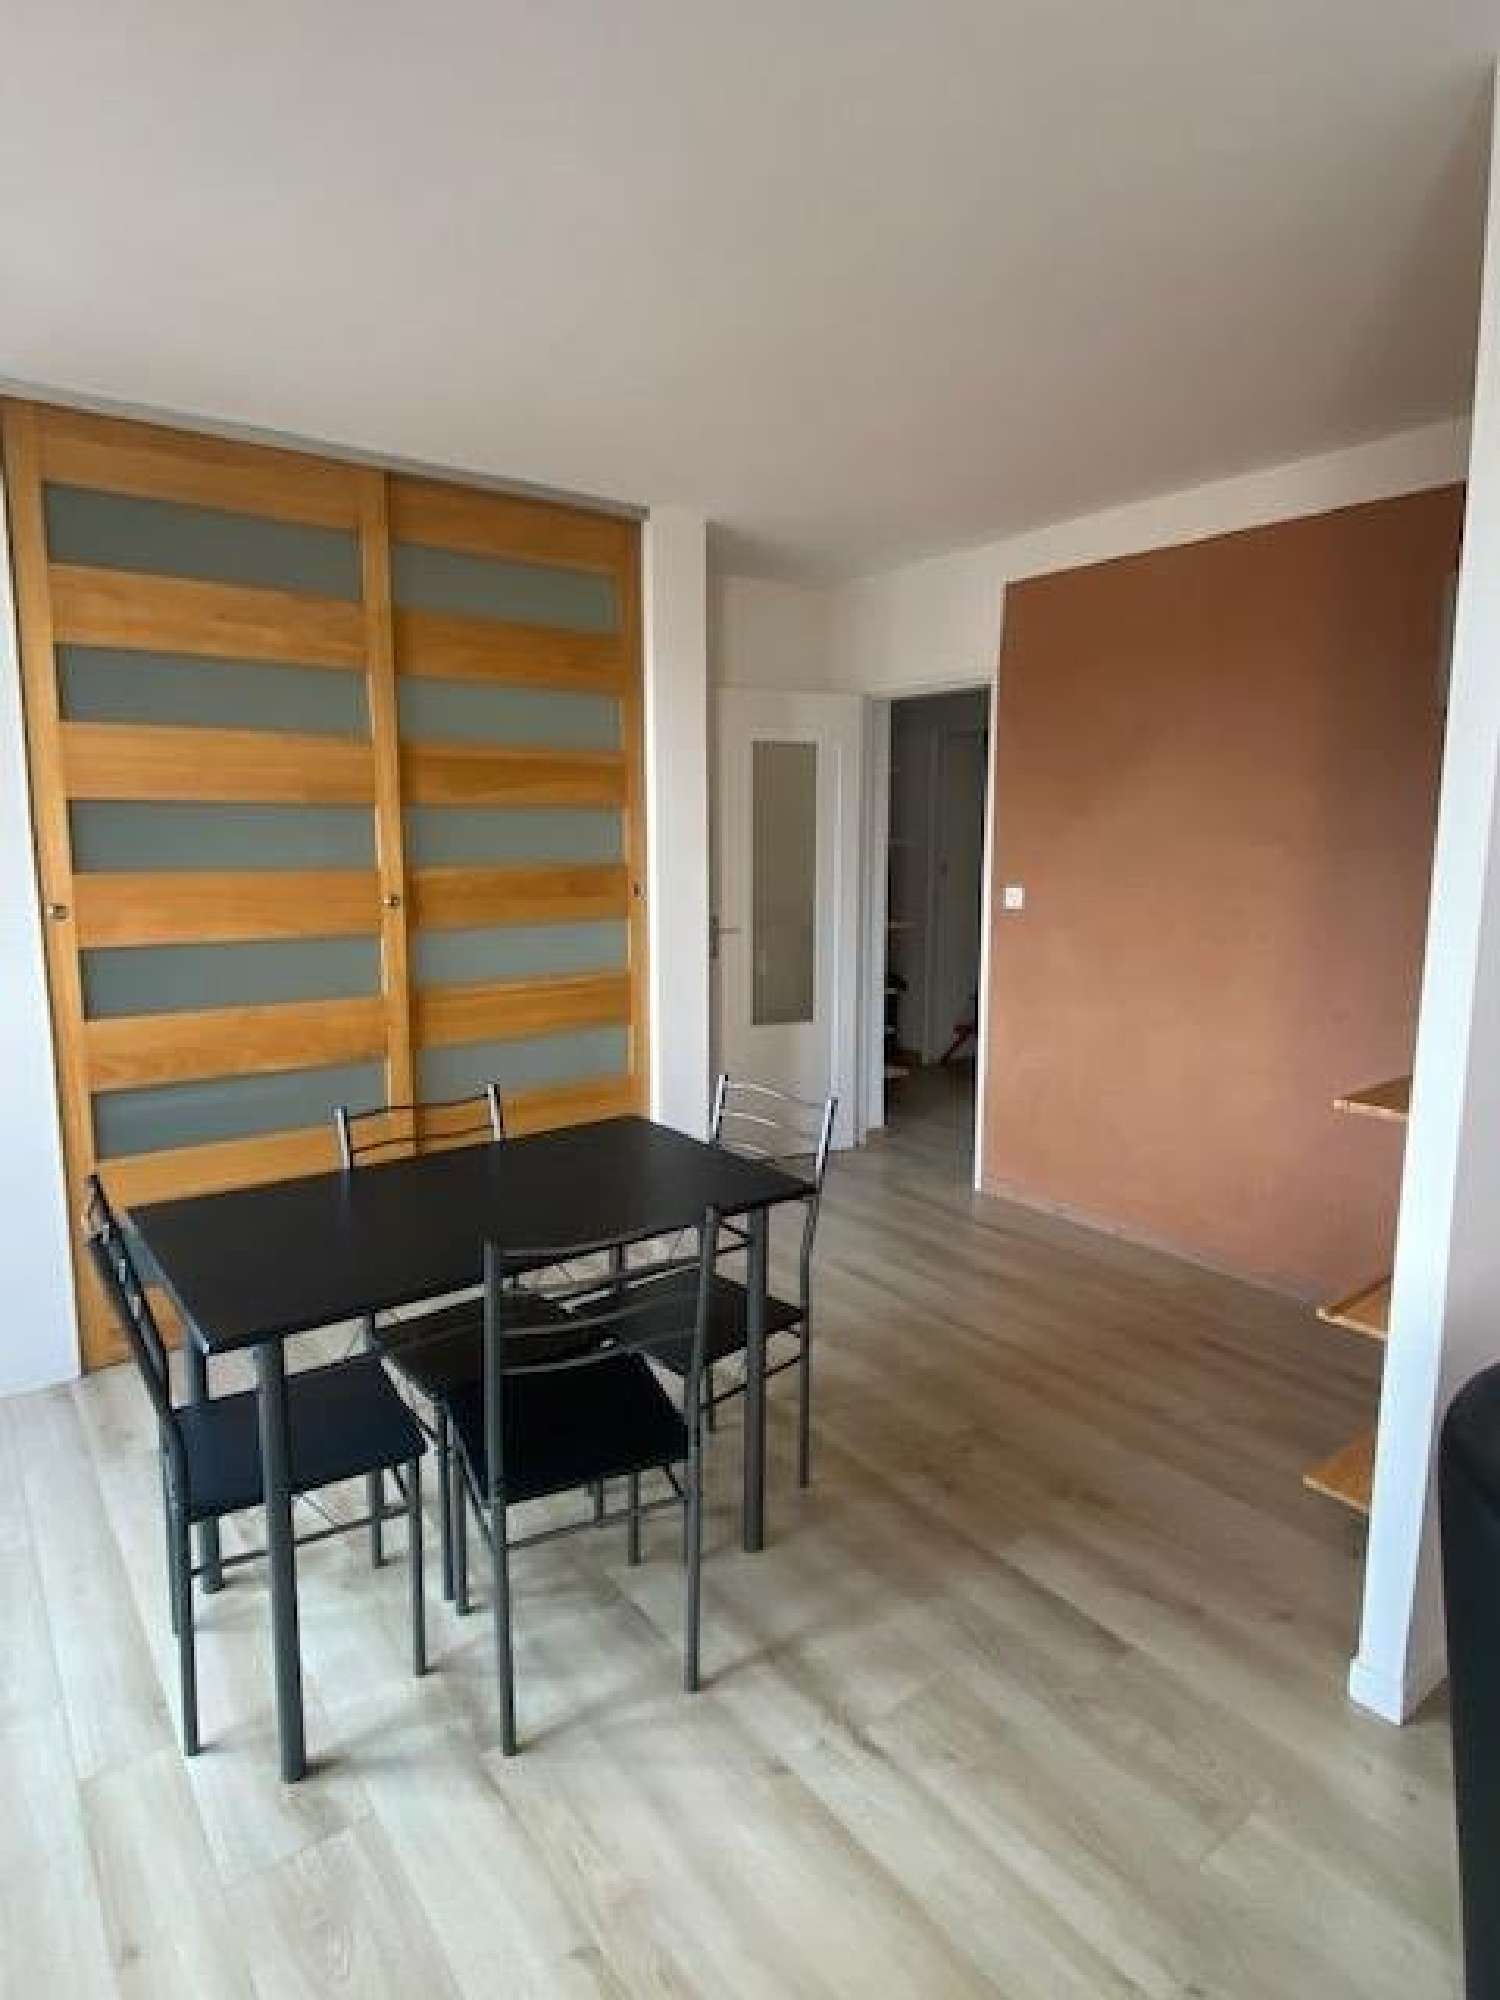  for sale apartment Angers 49100 Maine-et-Loire 2